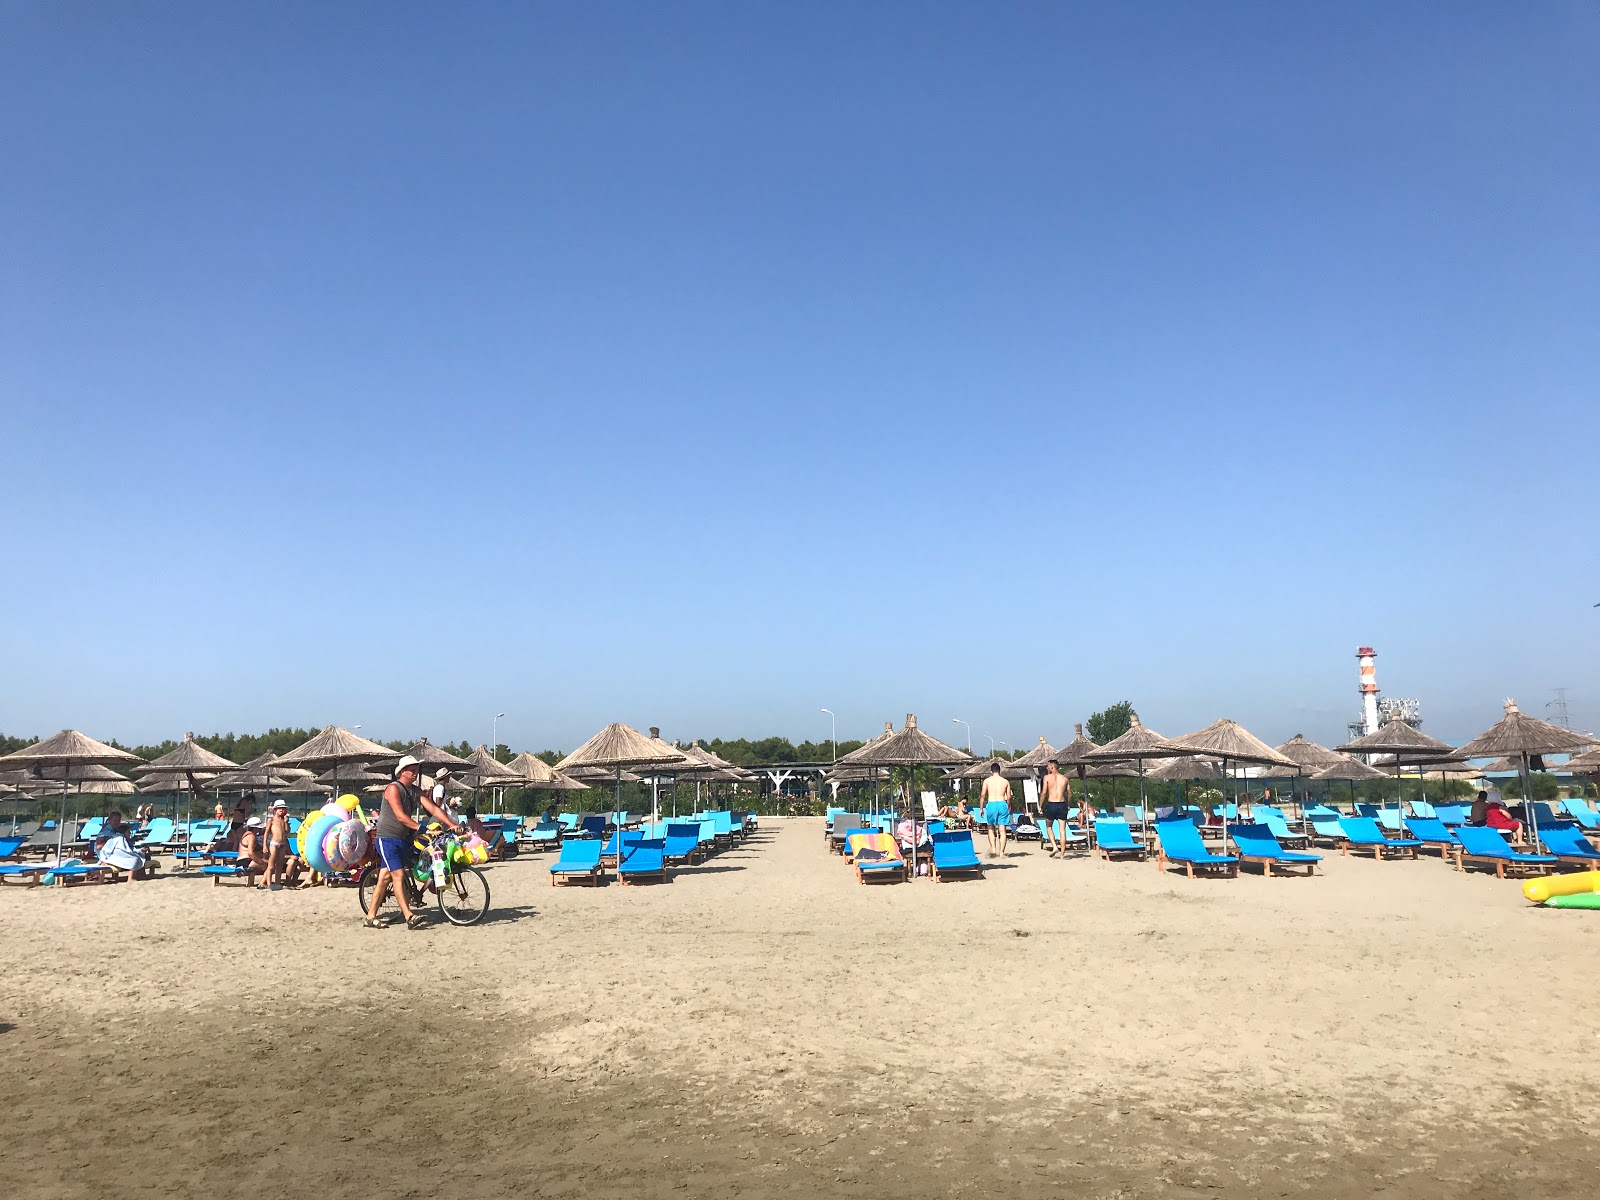 Foto de Narta beach - recomendado para viajantes em família com crianças